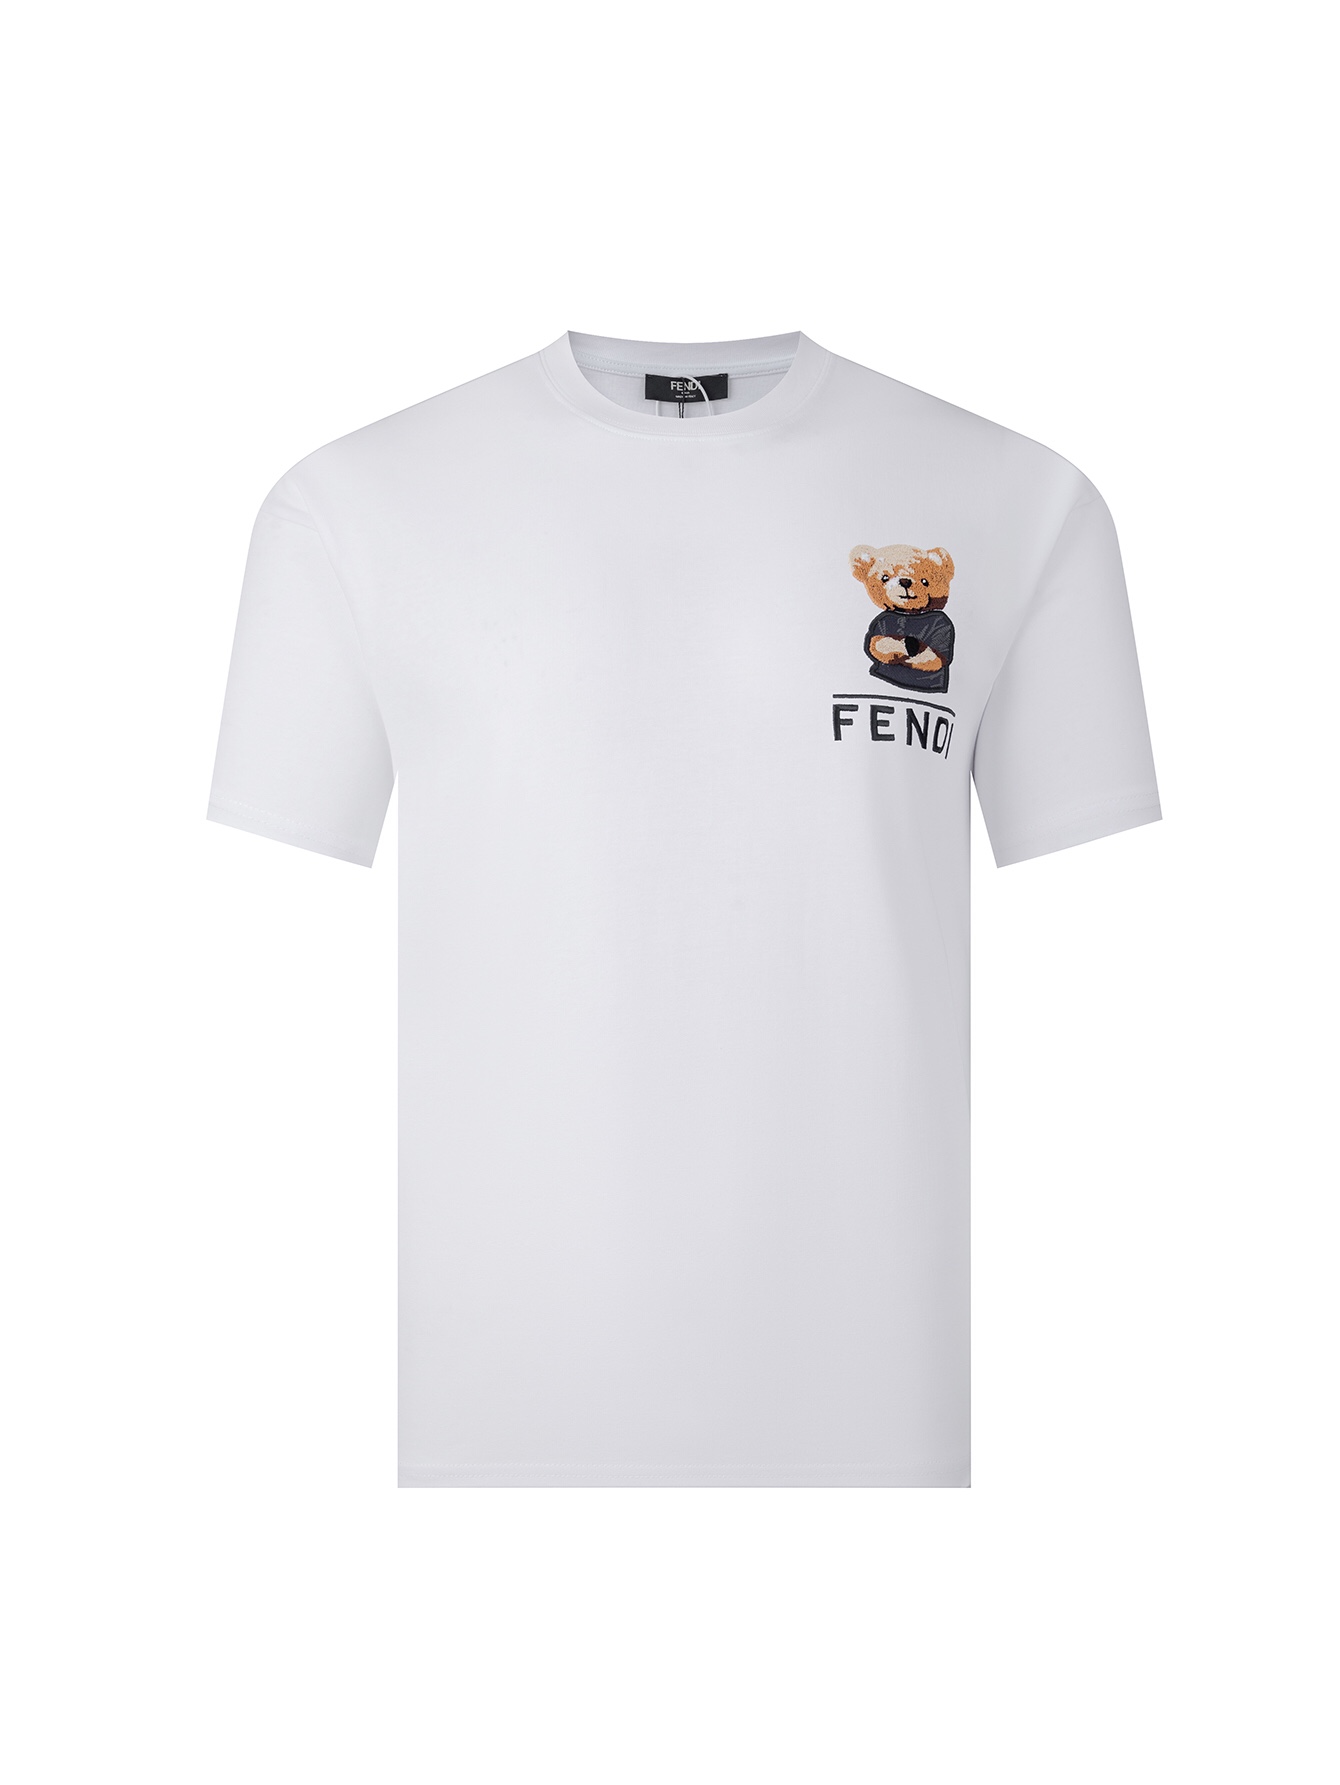 Fendi 1:1
 Clothing T-Shirt Buy High-Quality Fake
 Black White Embroidery Unisex Short Sleeve